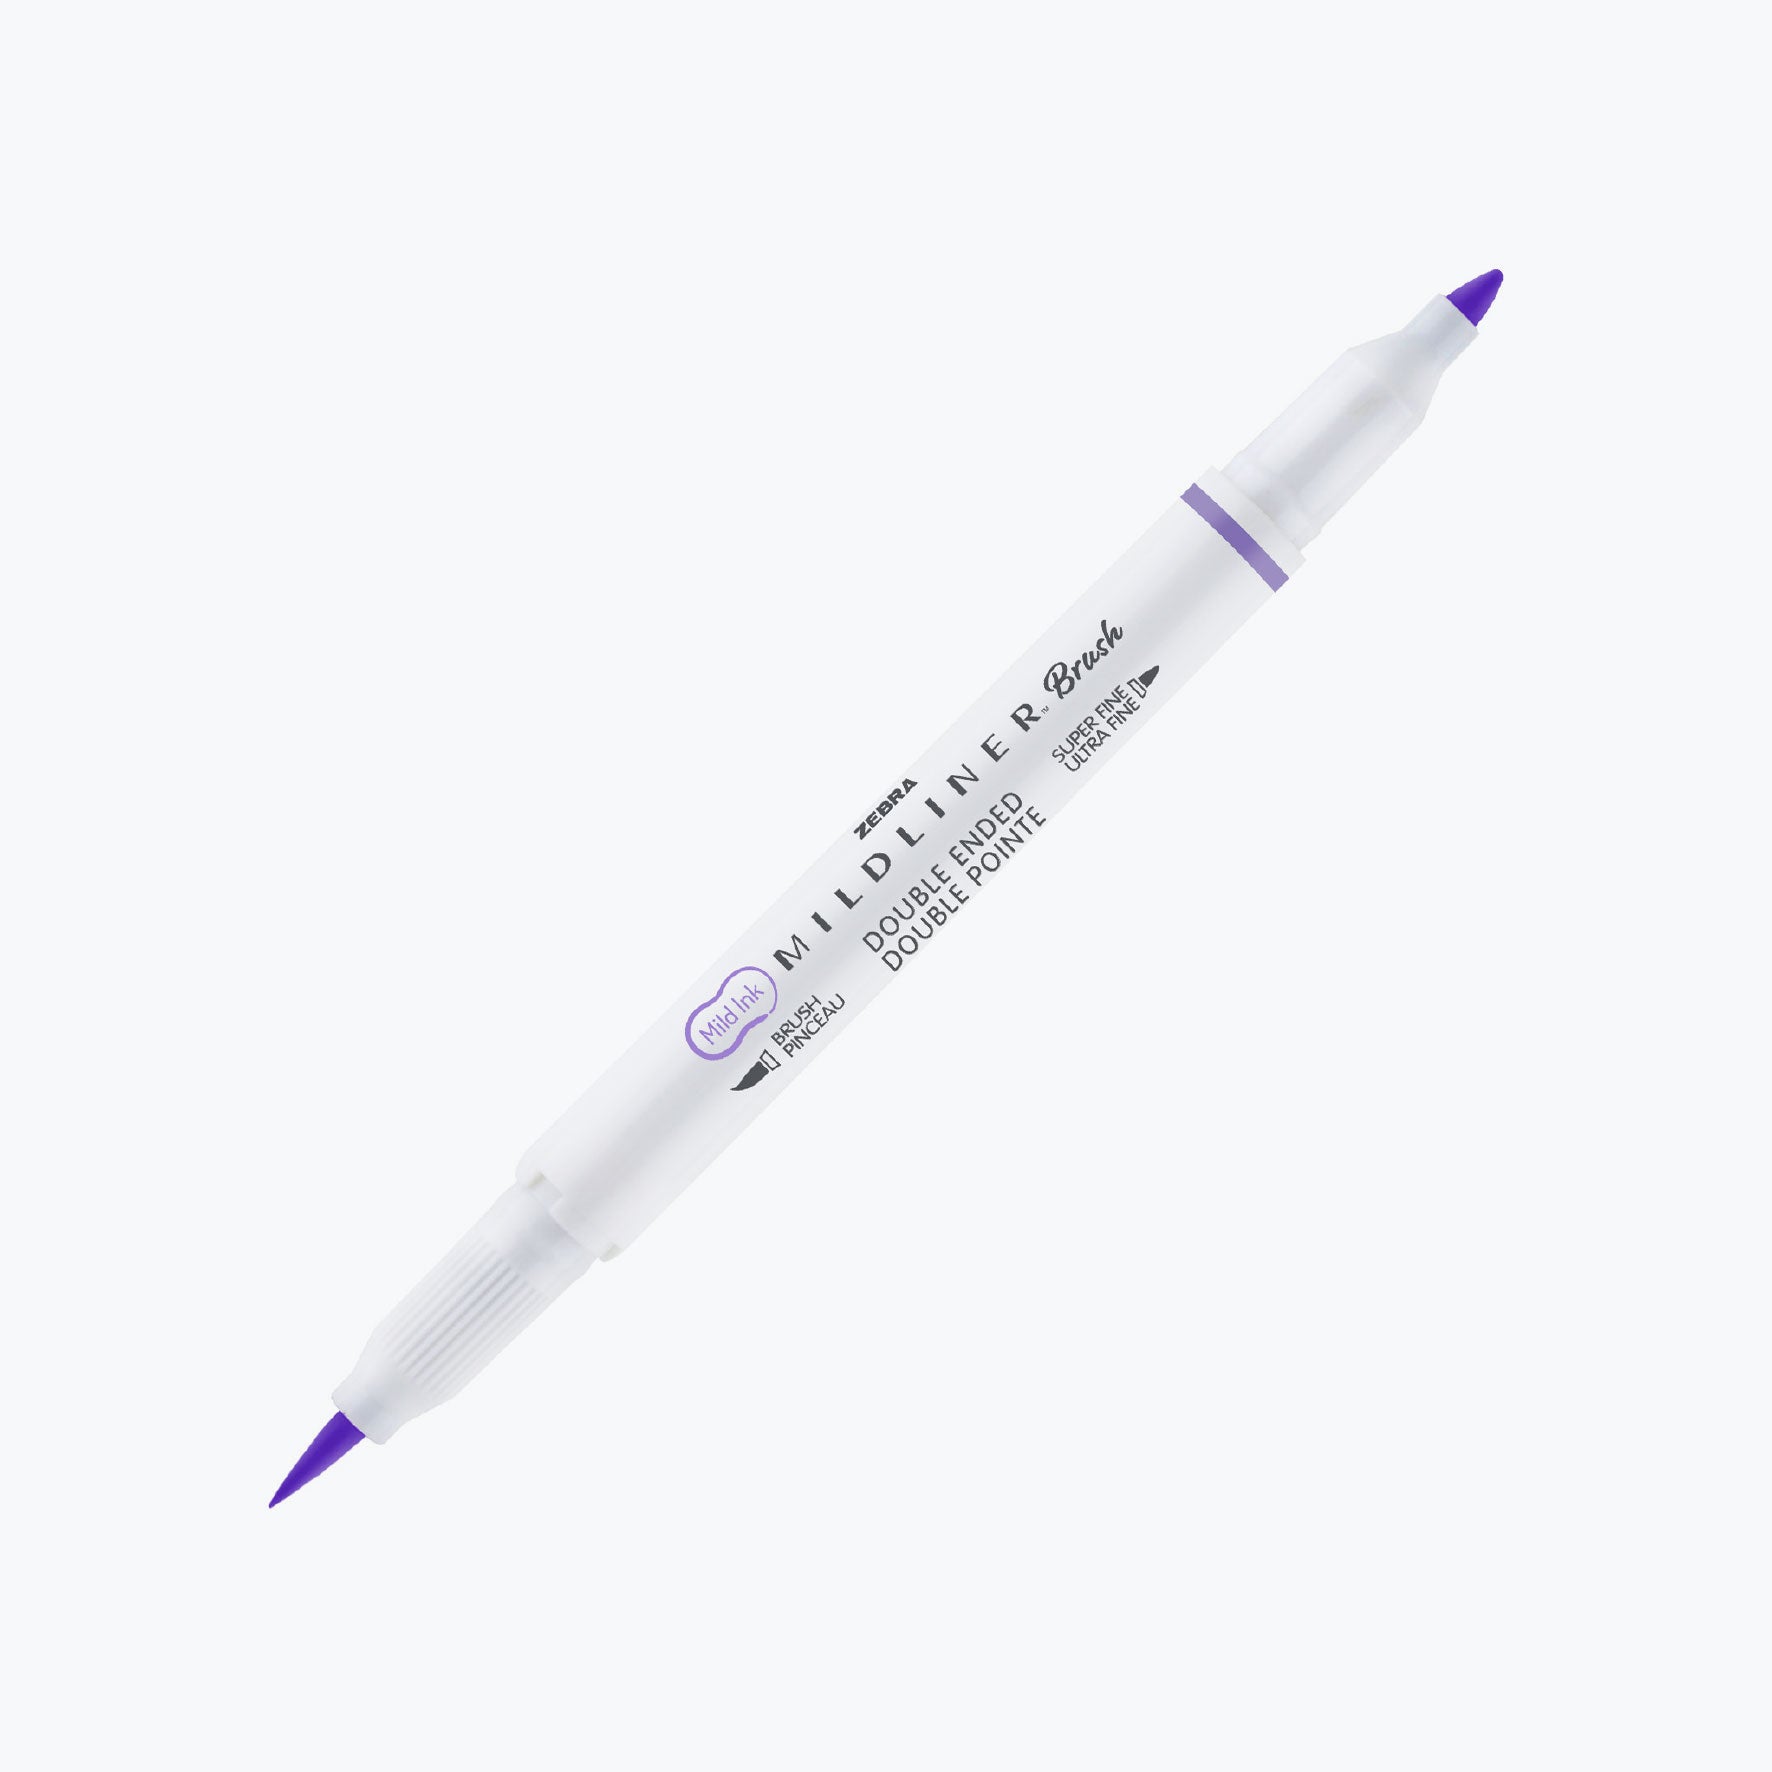 Zebra - Brush Pen - Mildliner Double Sided - Cool & Refined Set